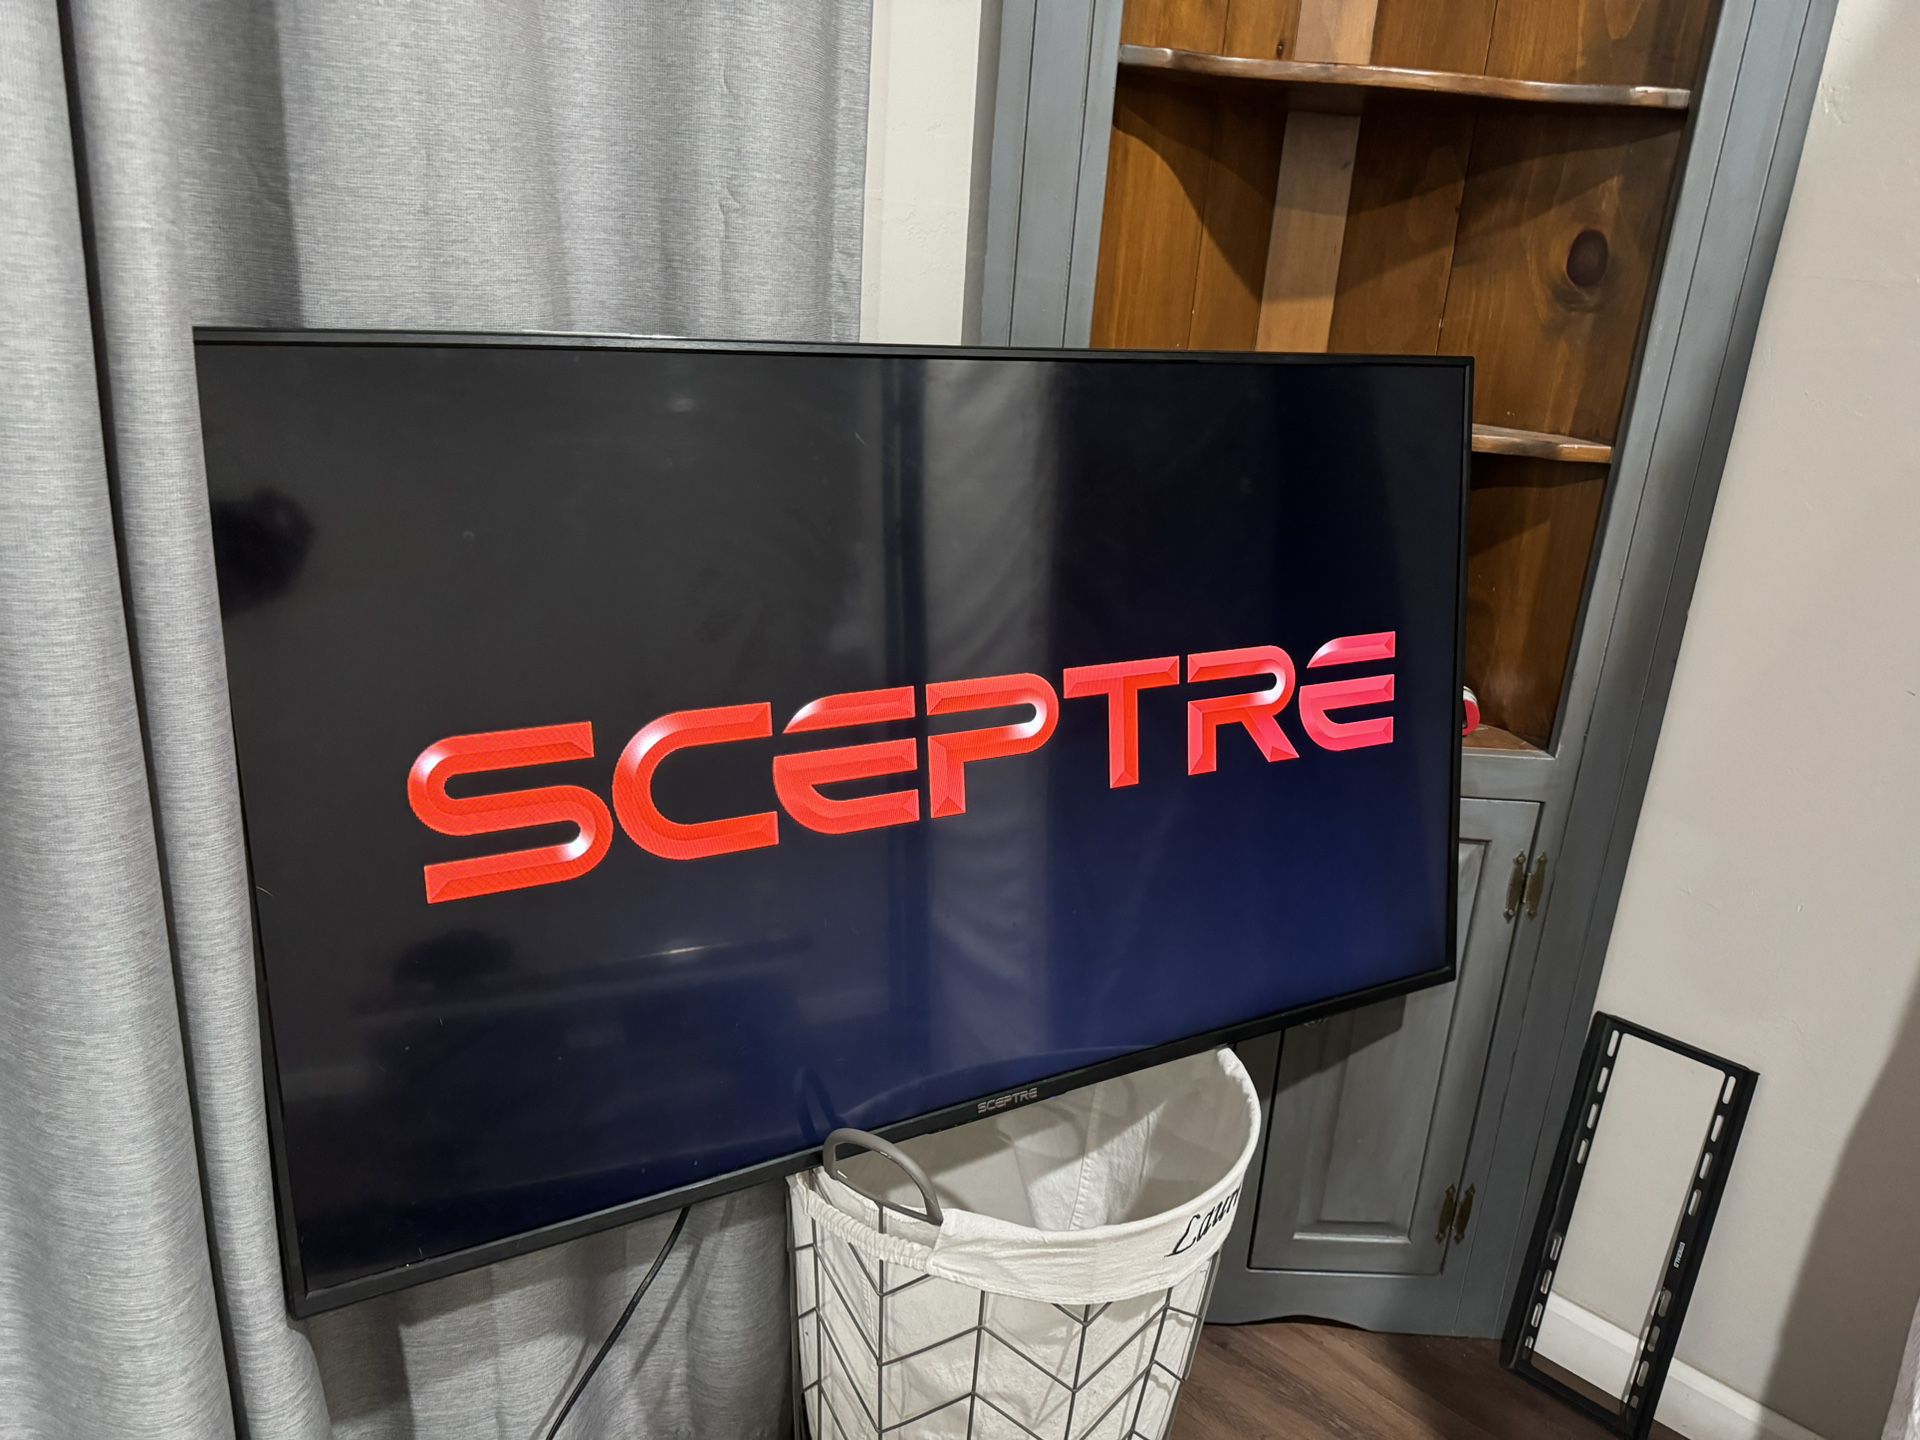 55” Sceptre TV 